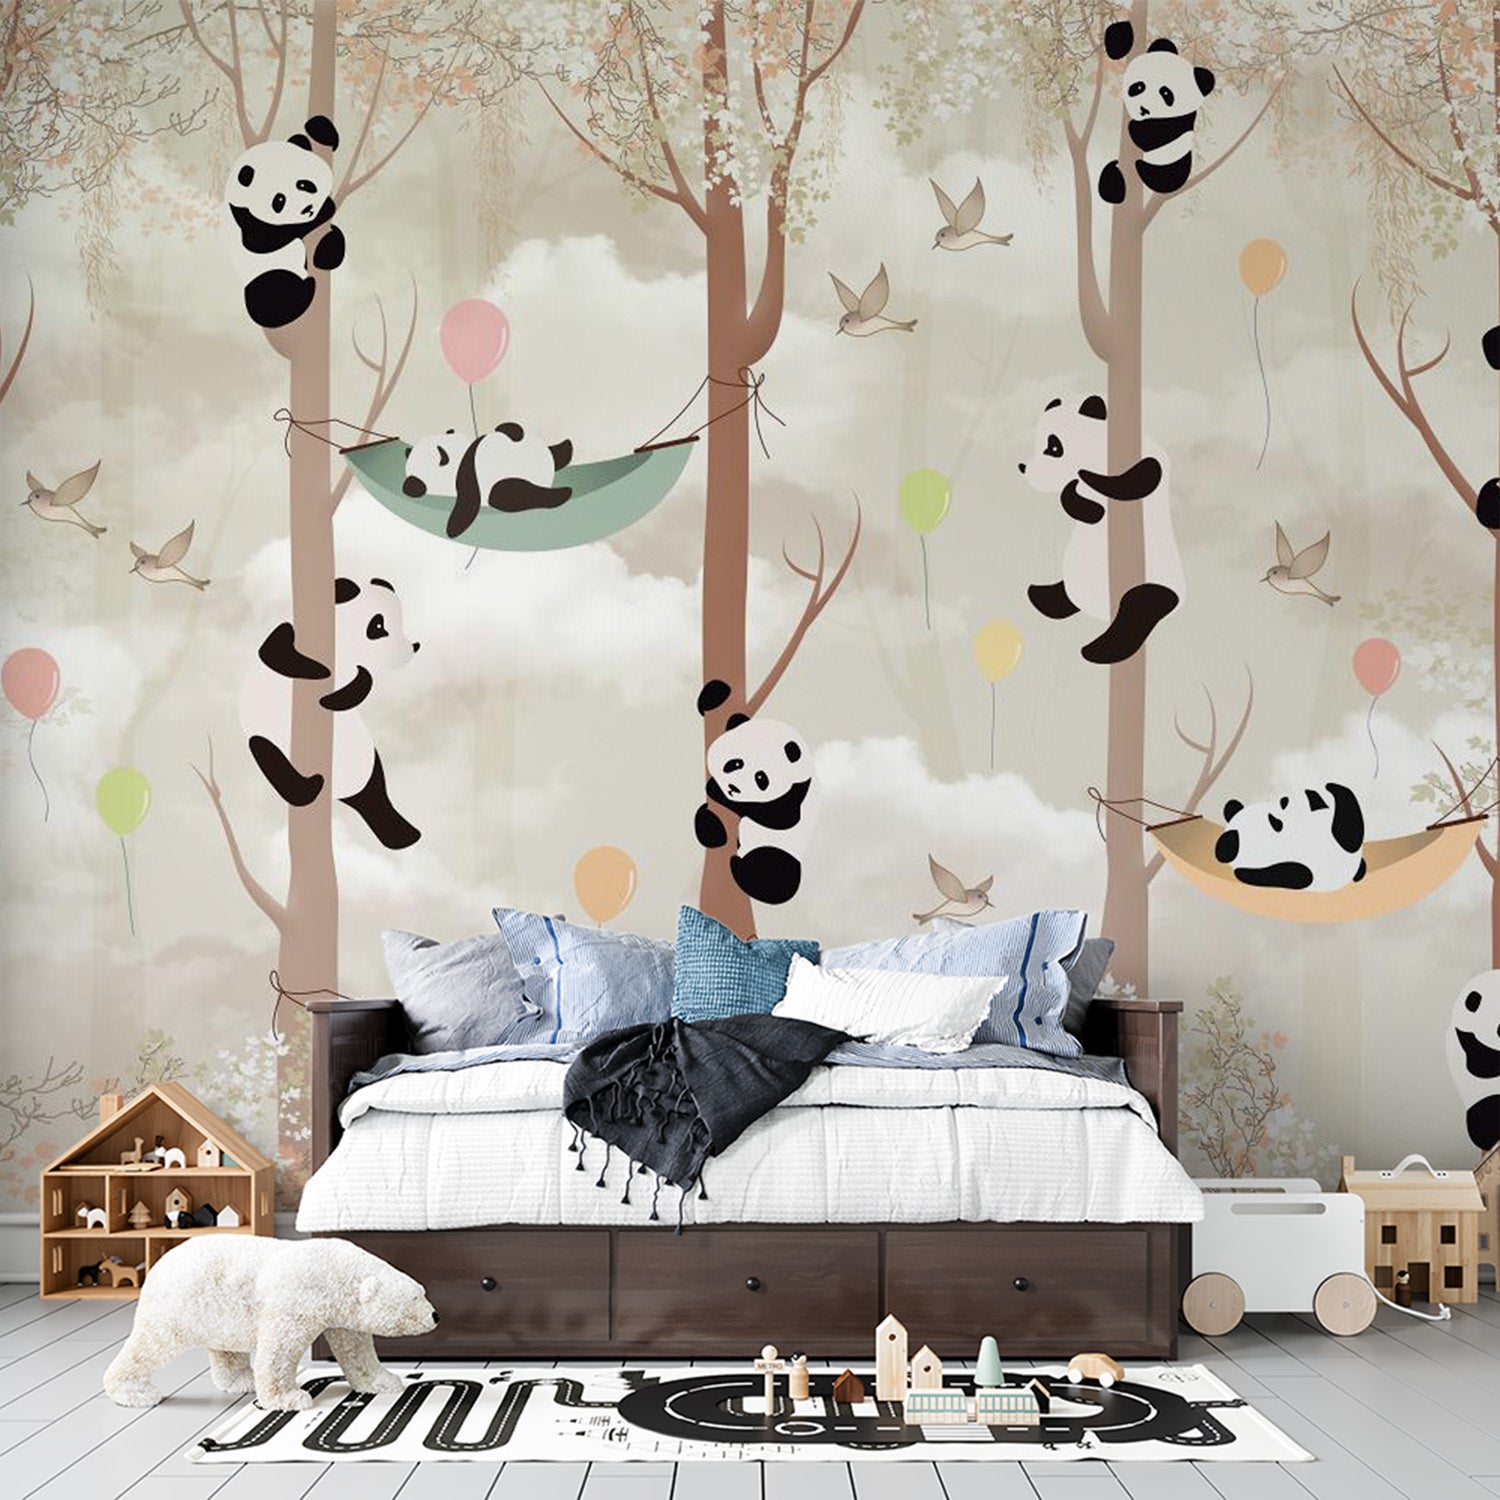 Papier peint panda dans des hamacs pour chambre d'enfant